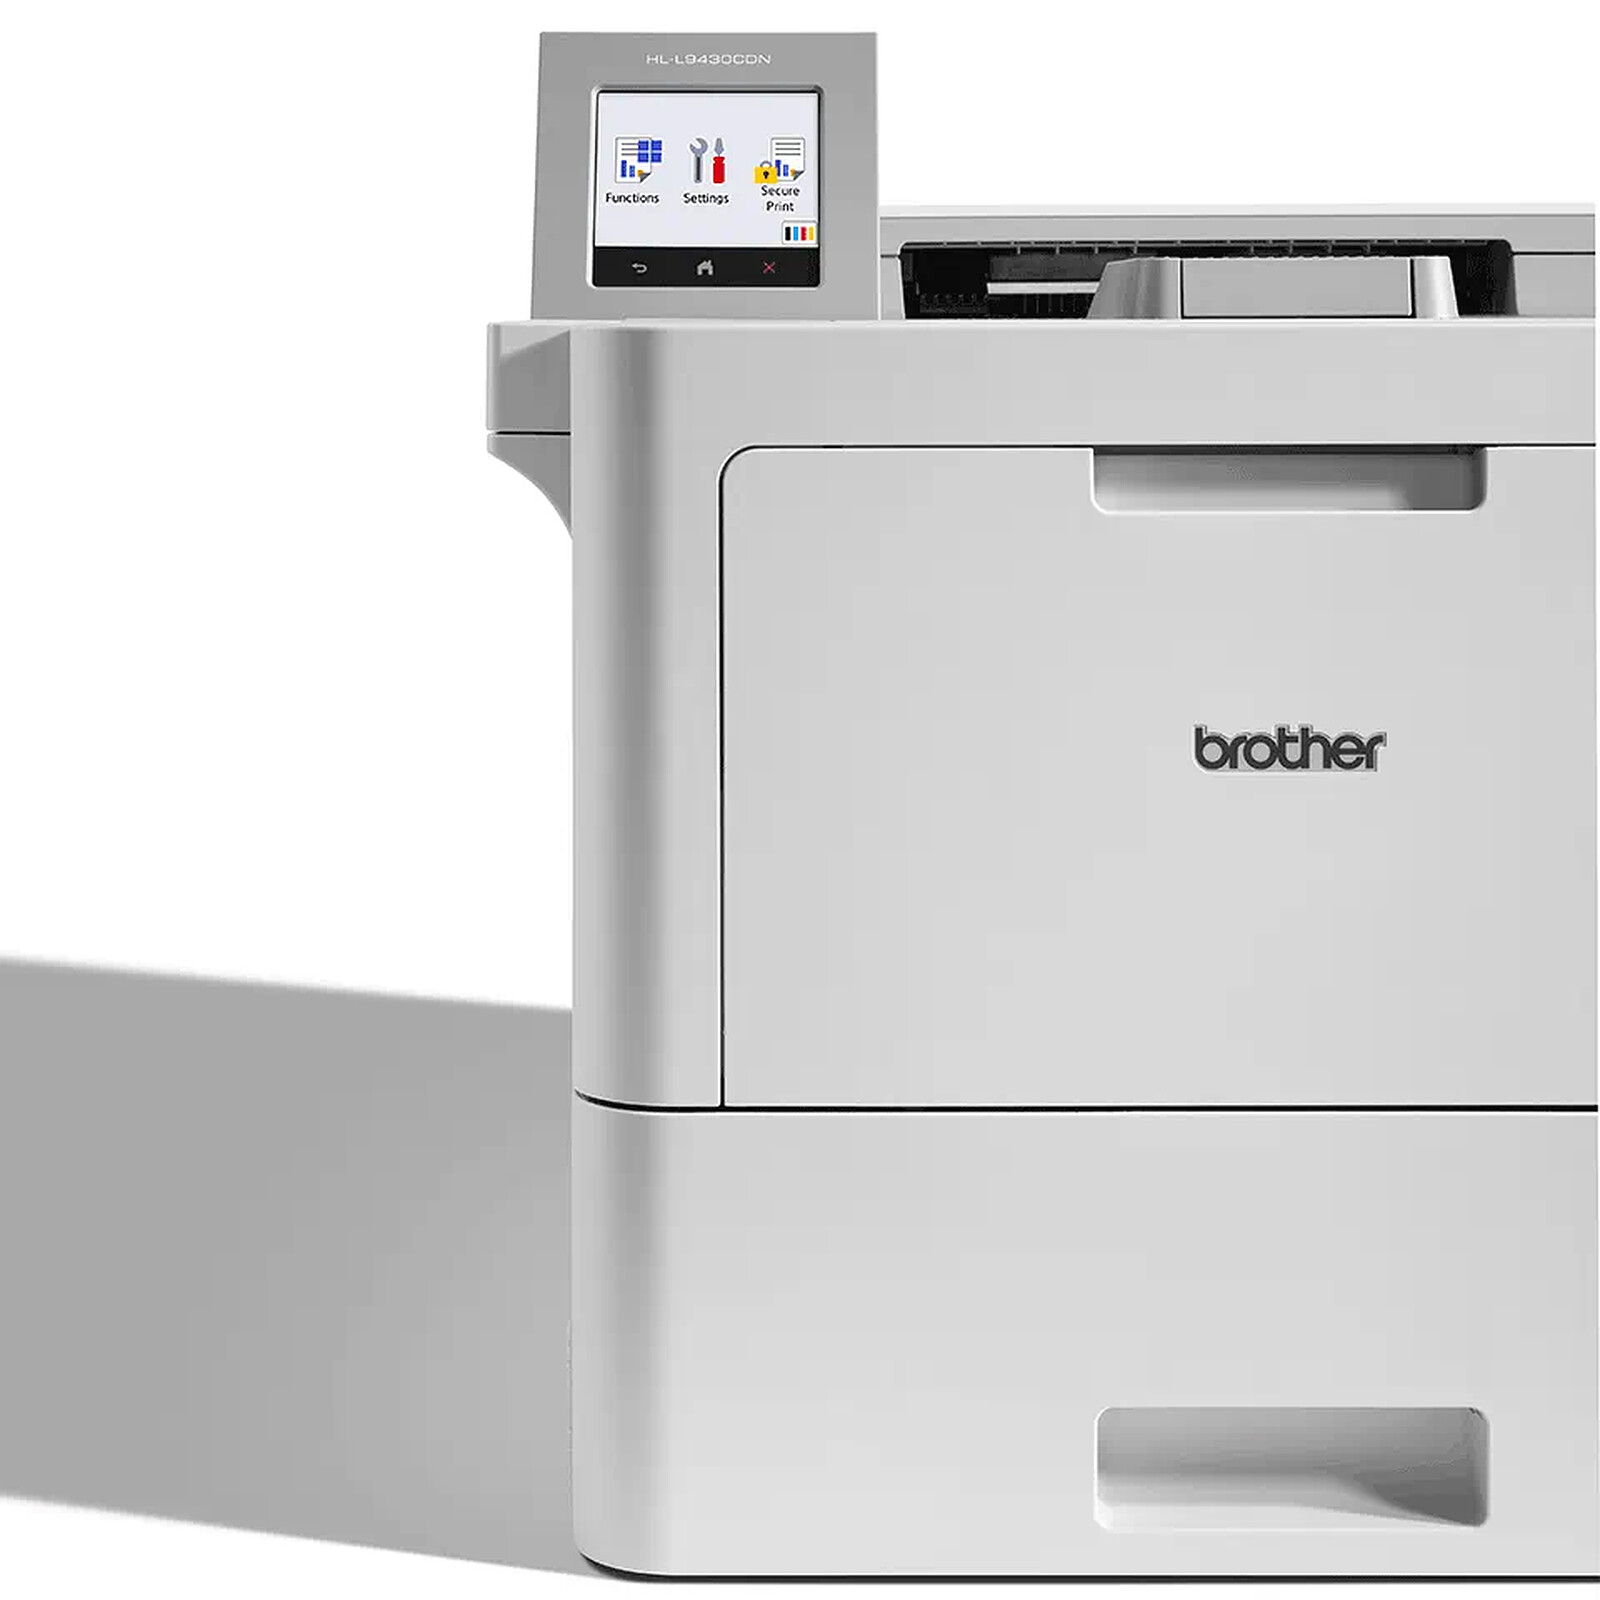 Brother imprimante laser hl-l8260cdw couleur avec réseau ethernet